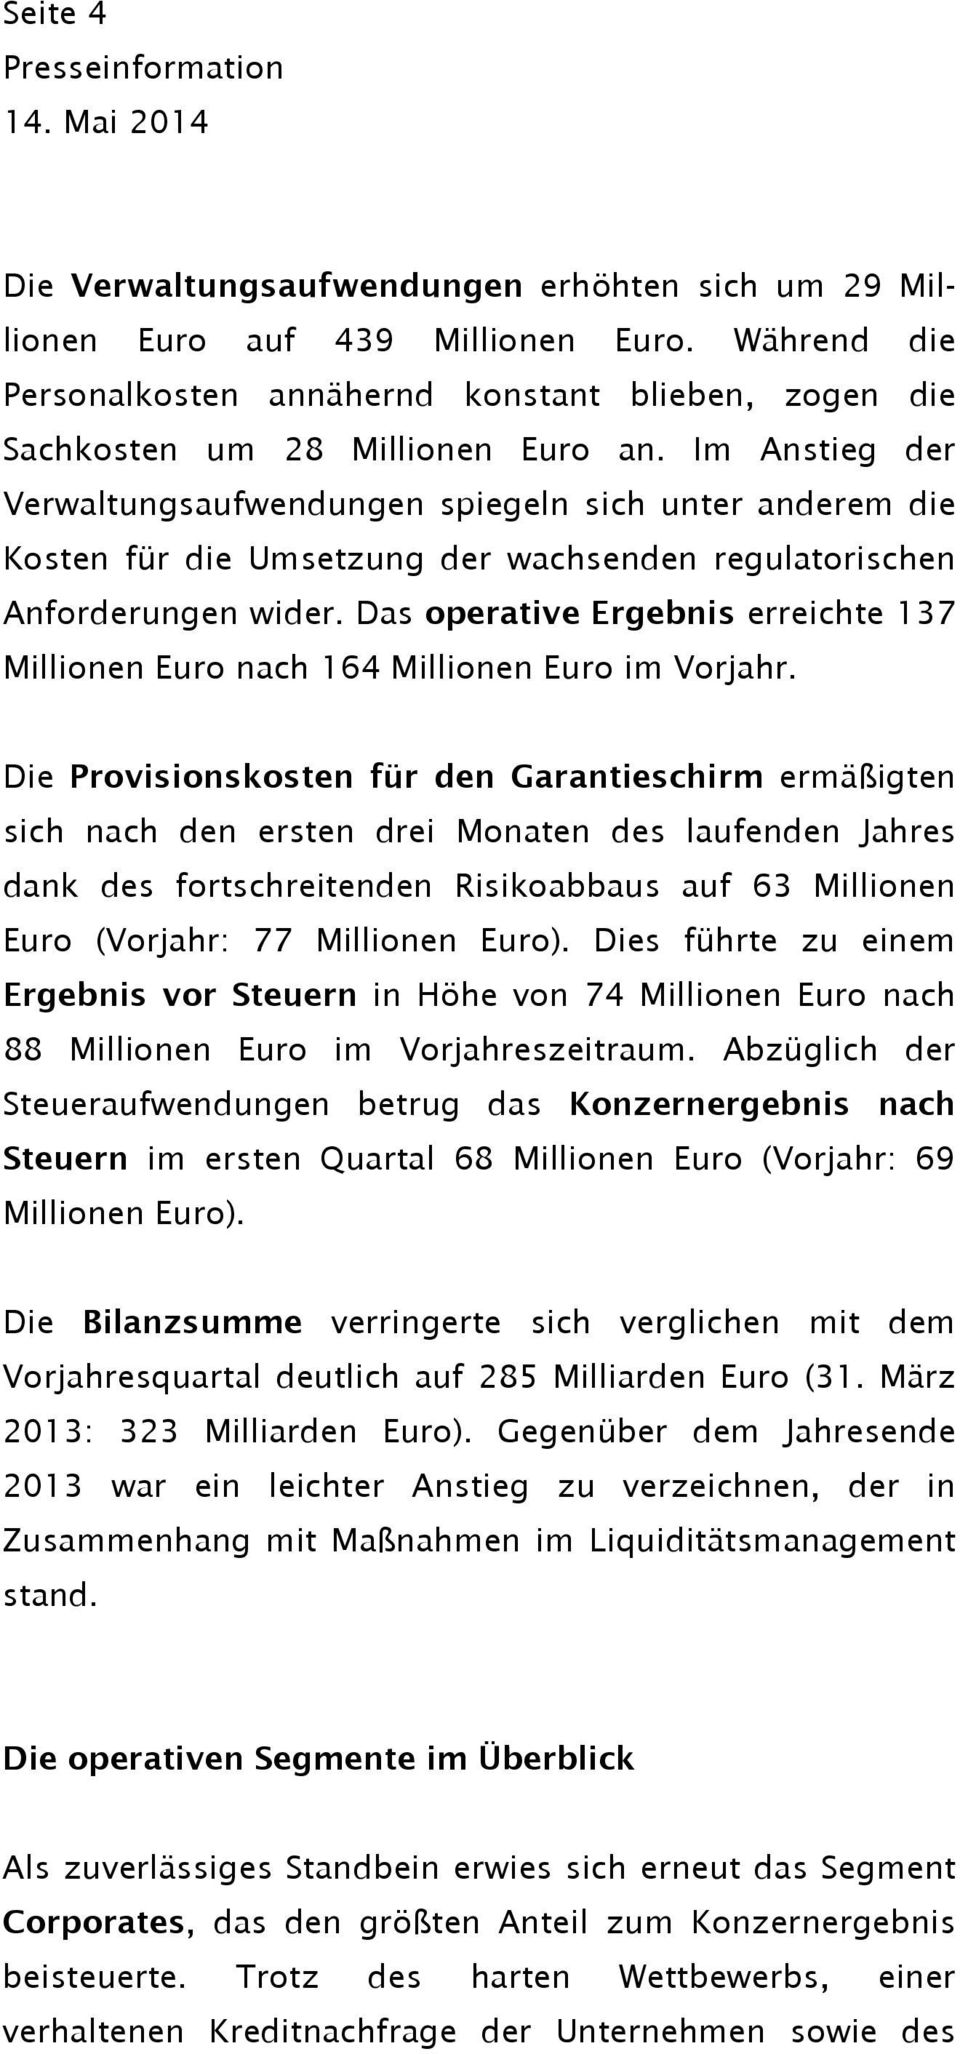 Das operative Ergebnis erreichte 137 Millionen Euro nach 164 Millionen Euro im Vorjahr.